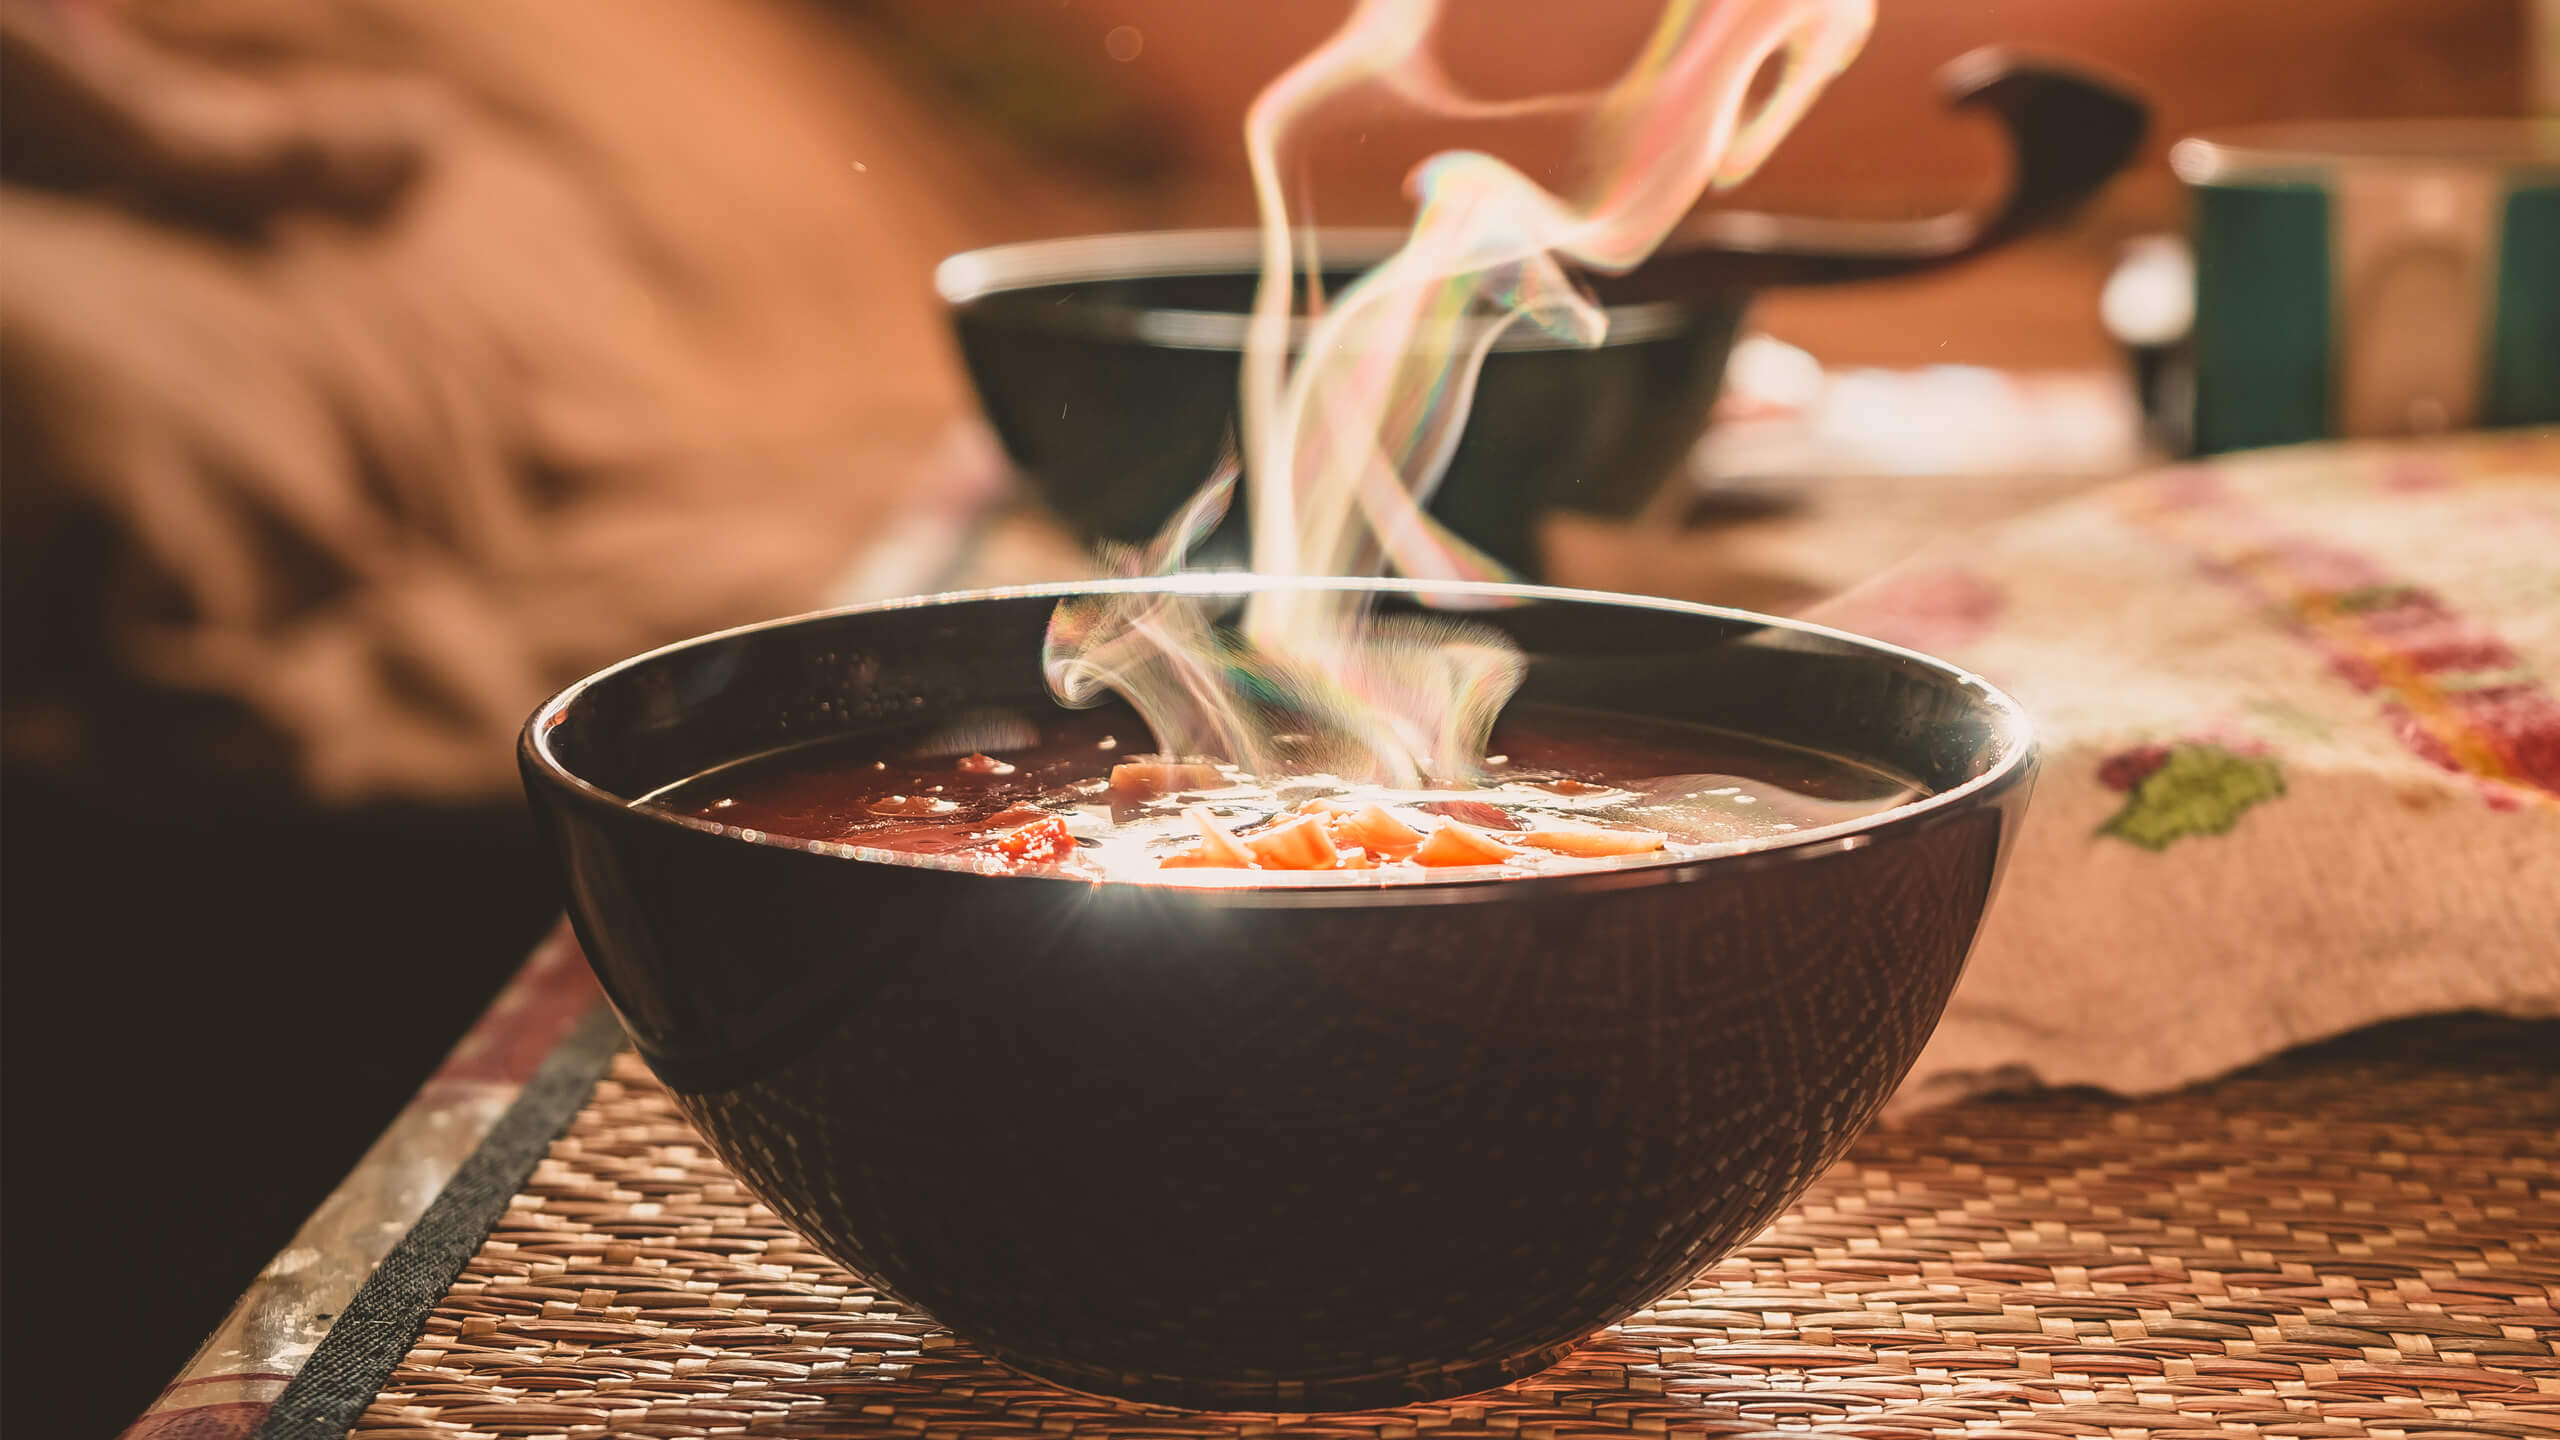 Dampfende Suppe in einer Schüssel